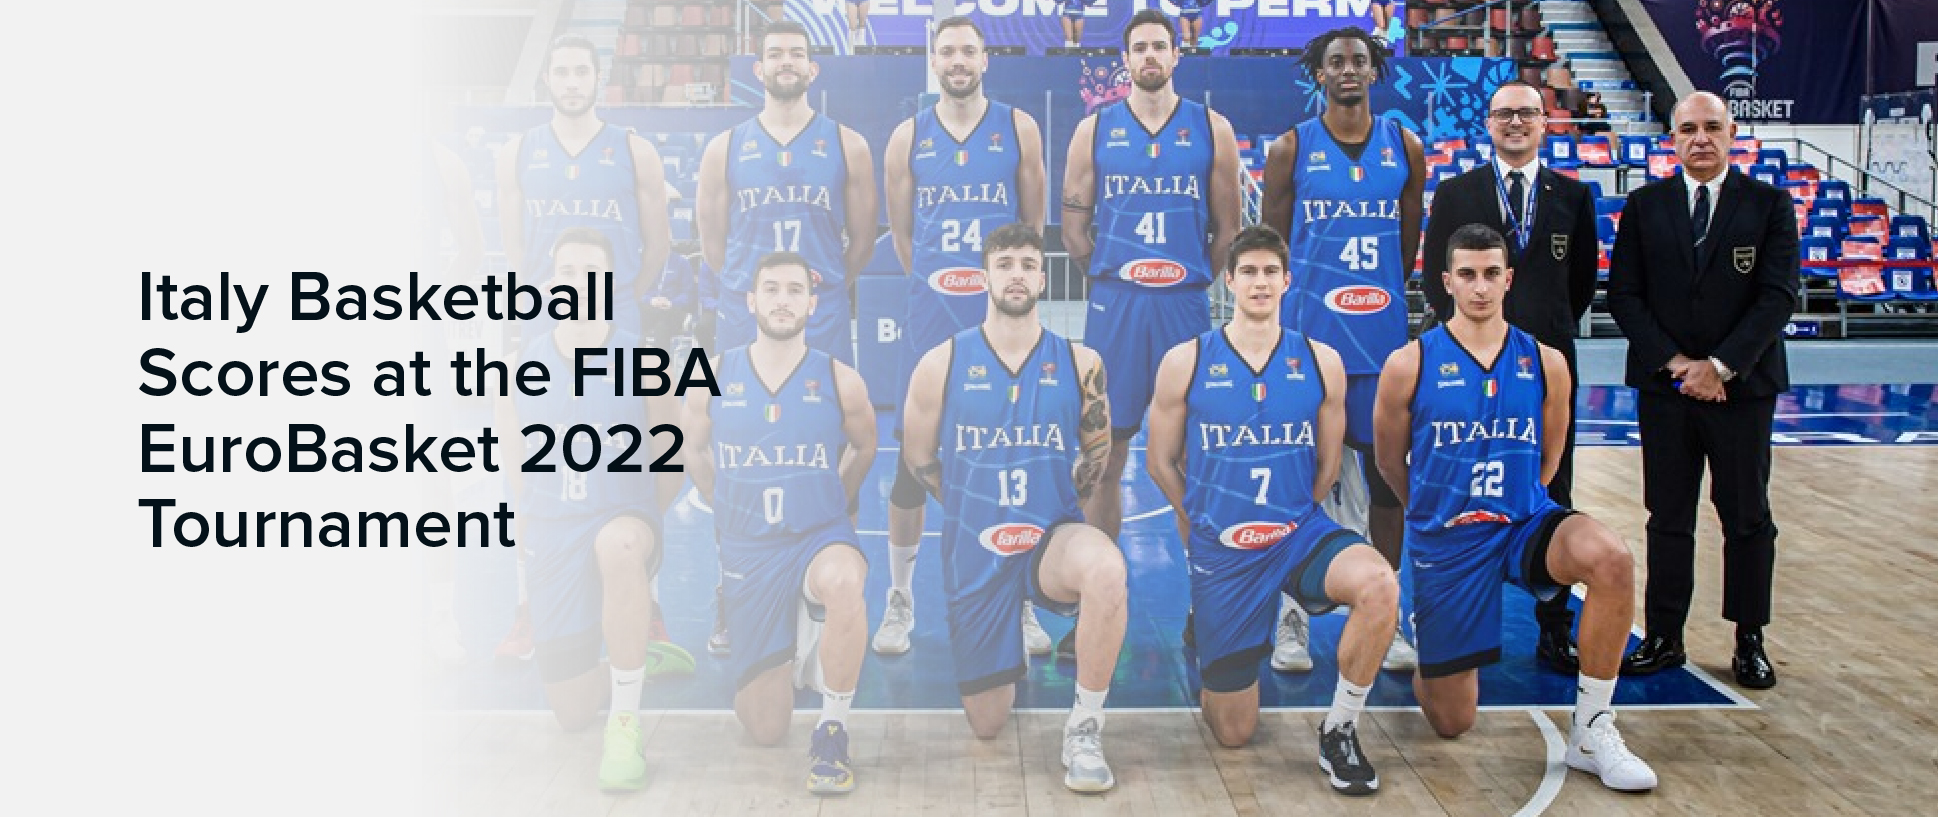 Italy Basketball Scores at the FIBA EuroBasket 2022 Tournament